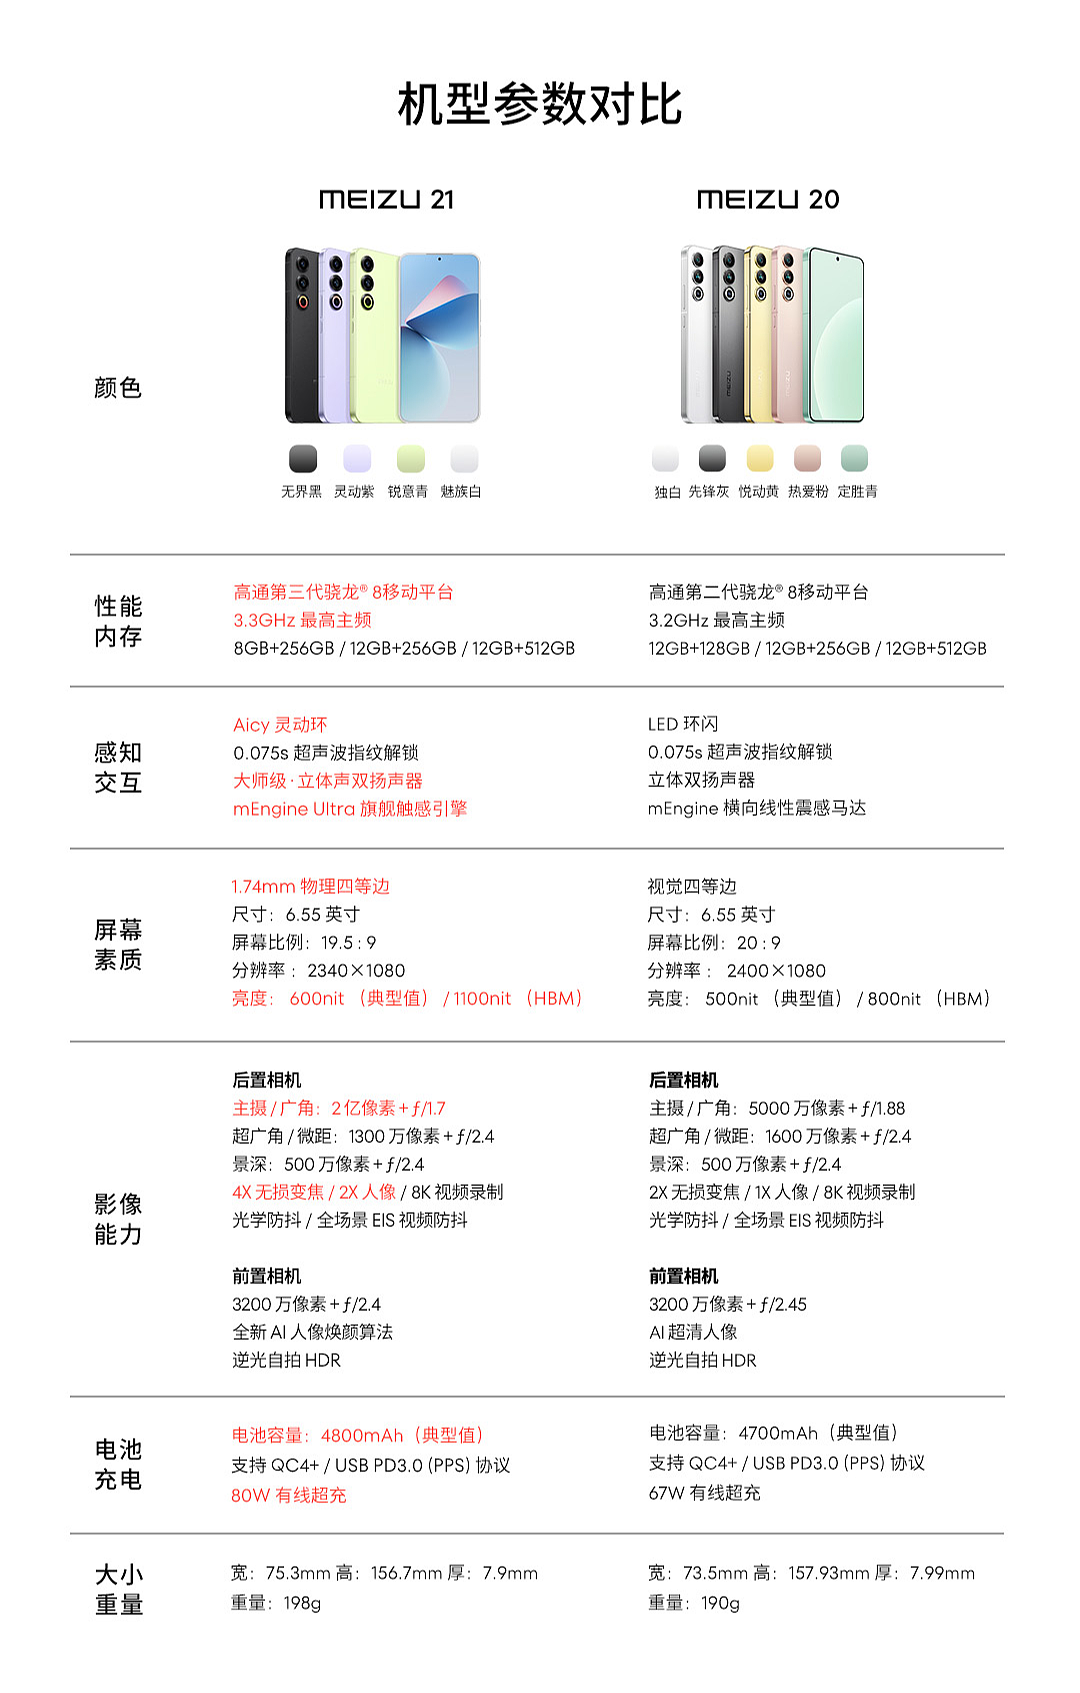 3999 元 → 3173 元：魅族 21 手机 512G 版京东百亿补贴 + 12 期免息 - 1